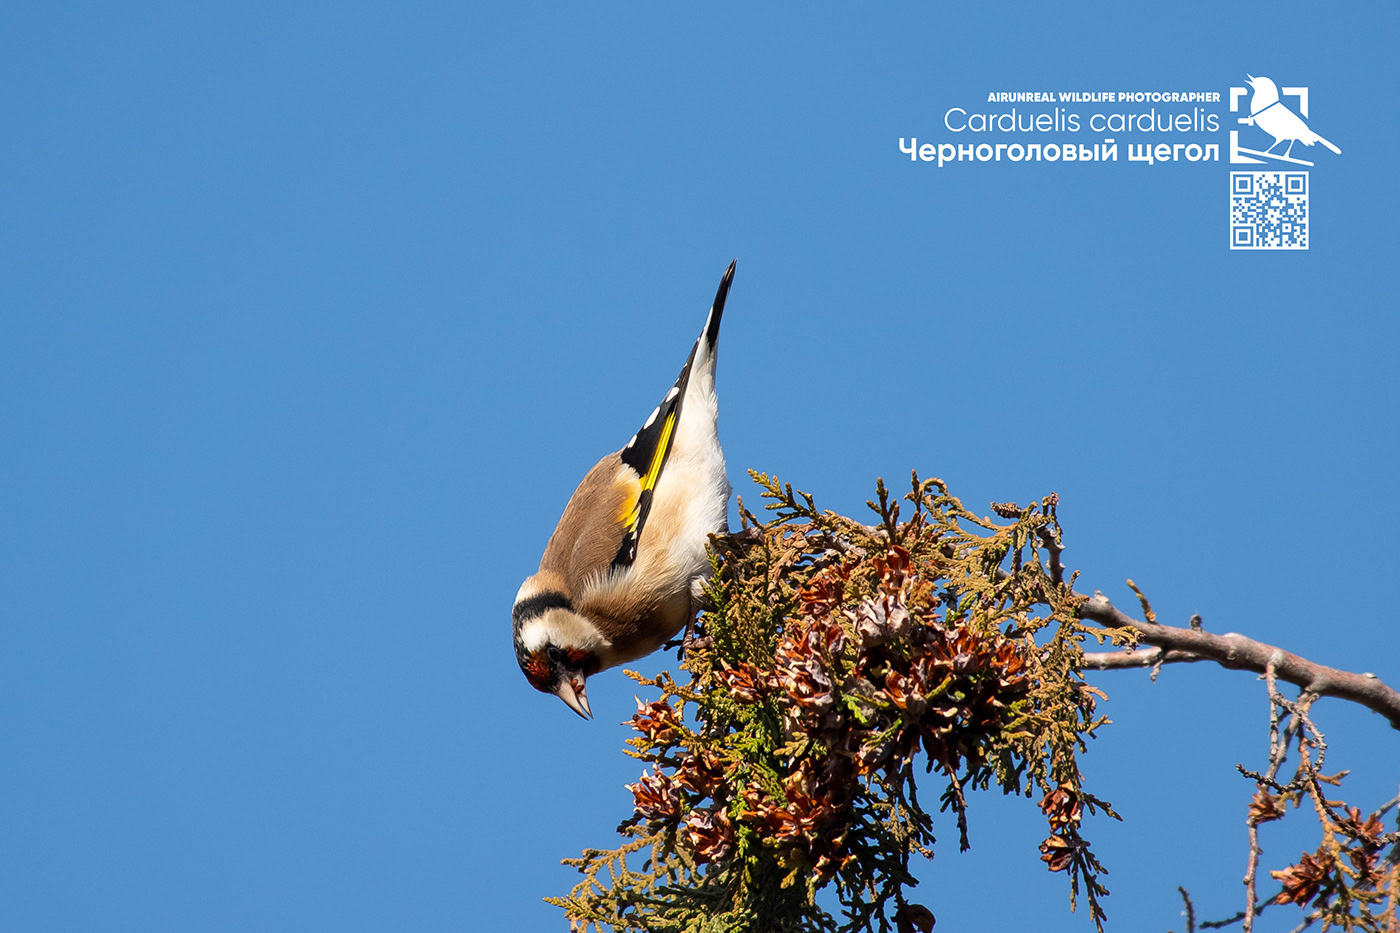 Carduelis carduelis bird birds birdswatching volgograd Russia wildlife European Goldfinch goldfinch